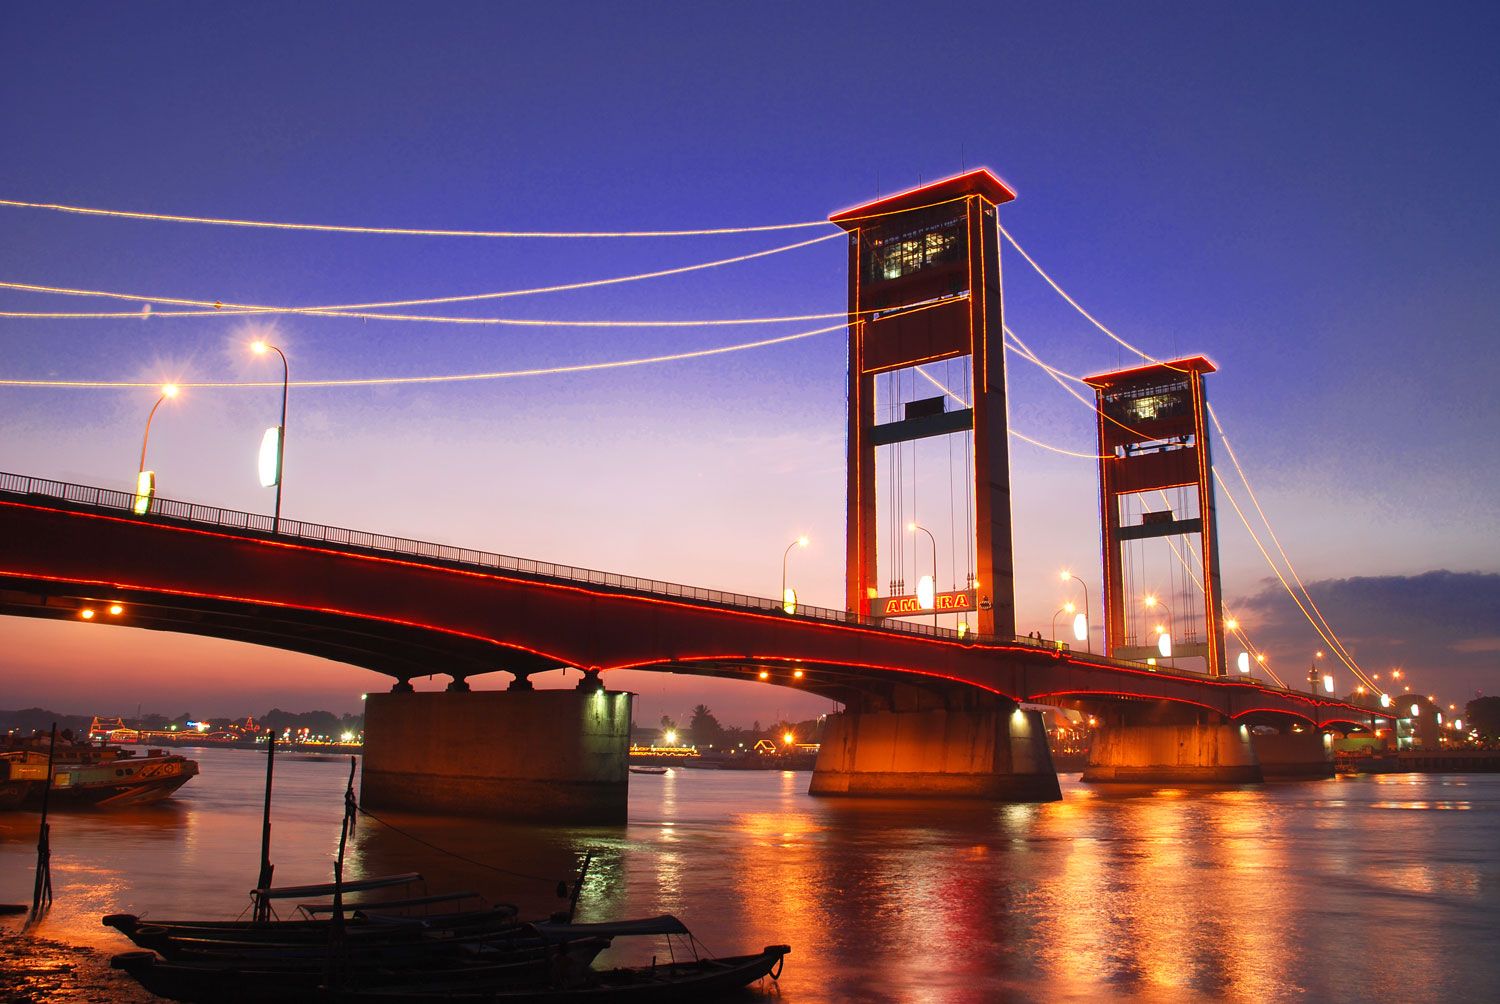 Jembatan Ampera, salah satu dari wisata Palembang yang paling hits yang sayang apabila dilewatkan. Simak 4 rekomendasi wisata Palembang yang Instagramable dan hits!